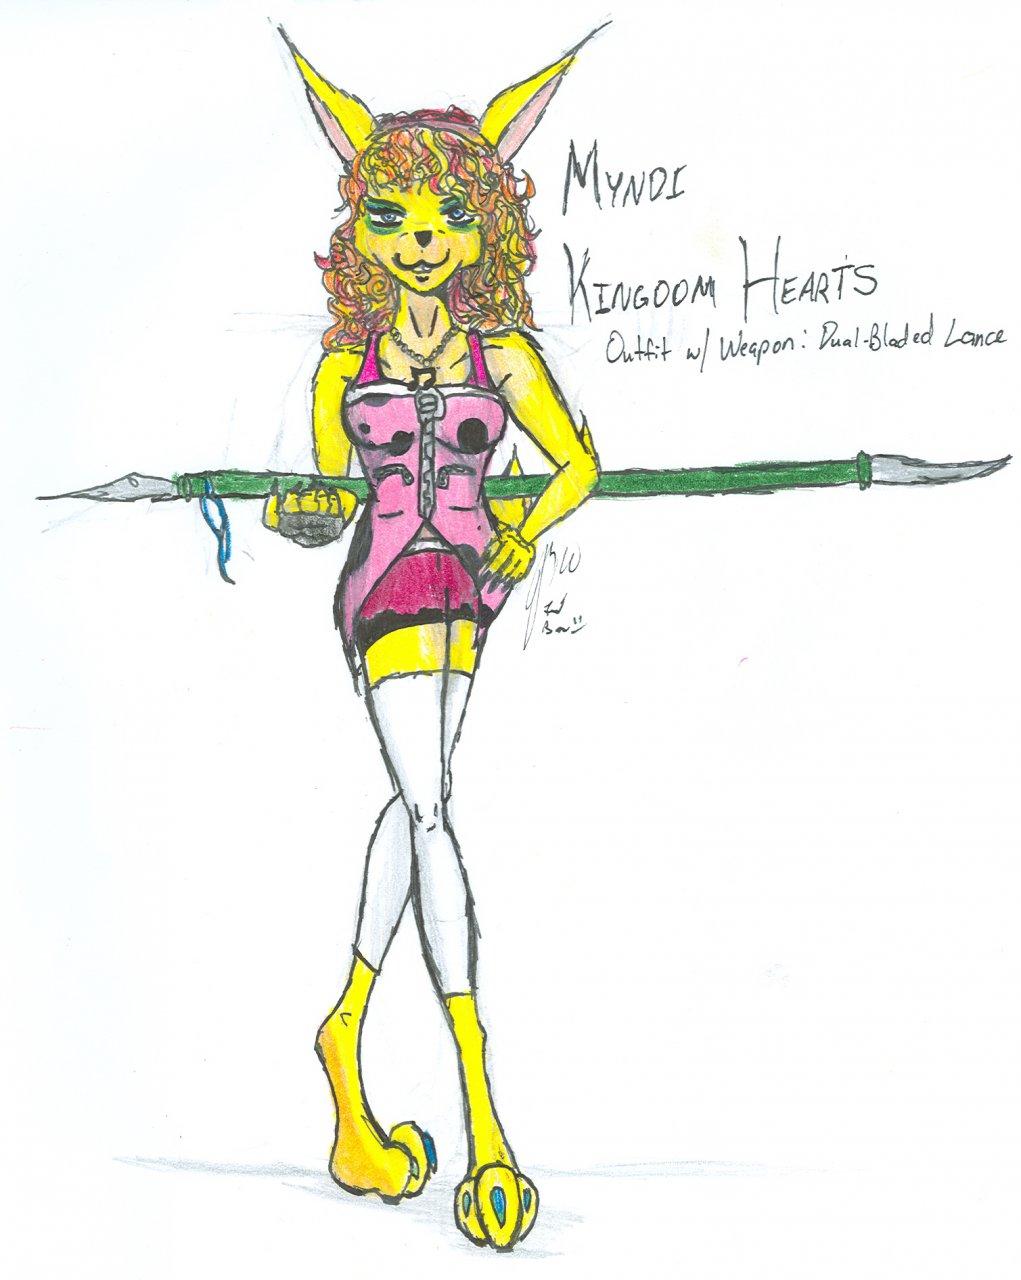 Myndi Kingdom Hearts Outfit and Weapon by kosmosuzuki